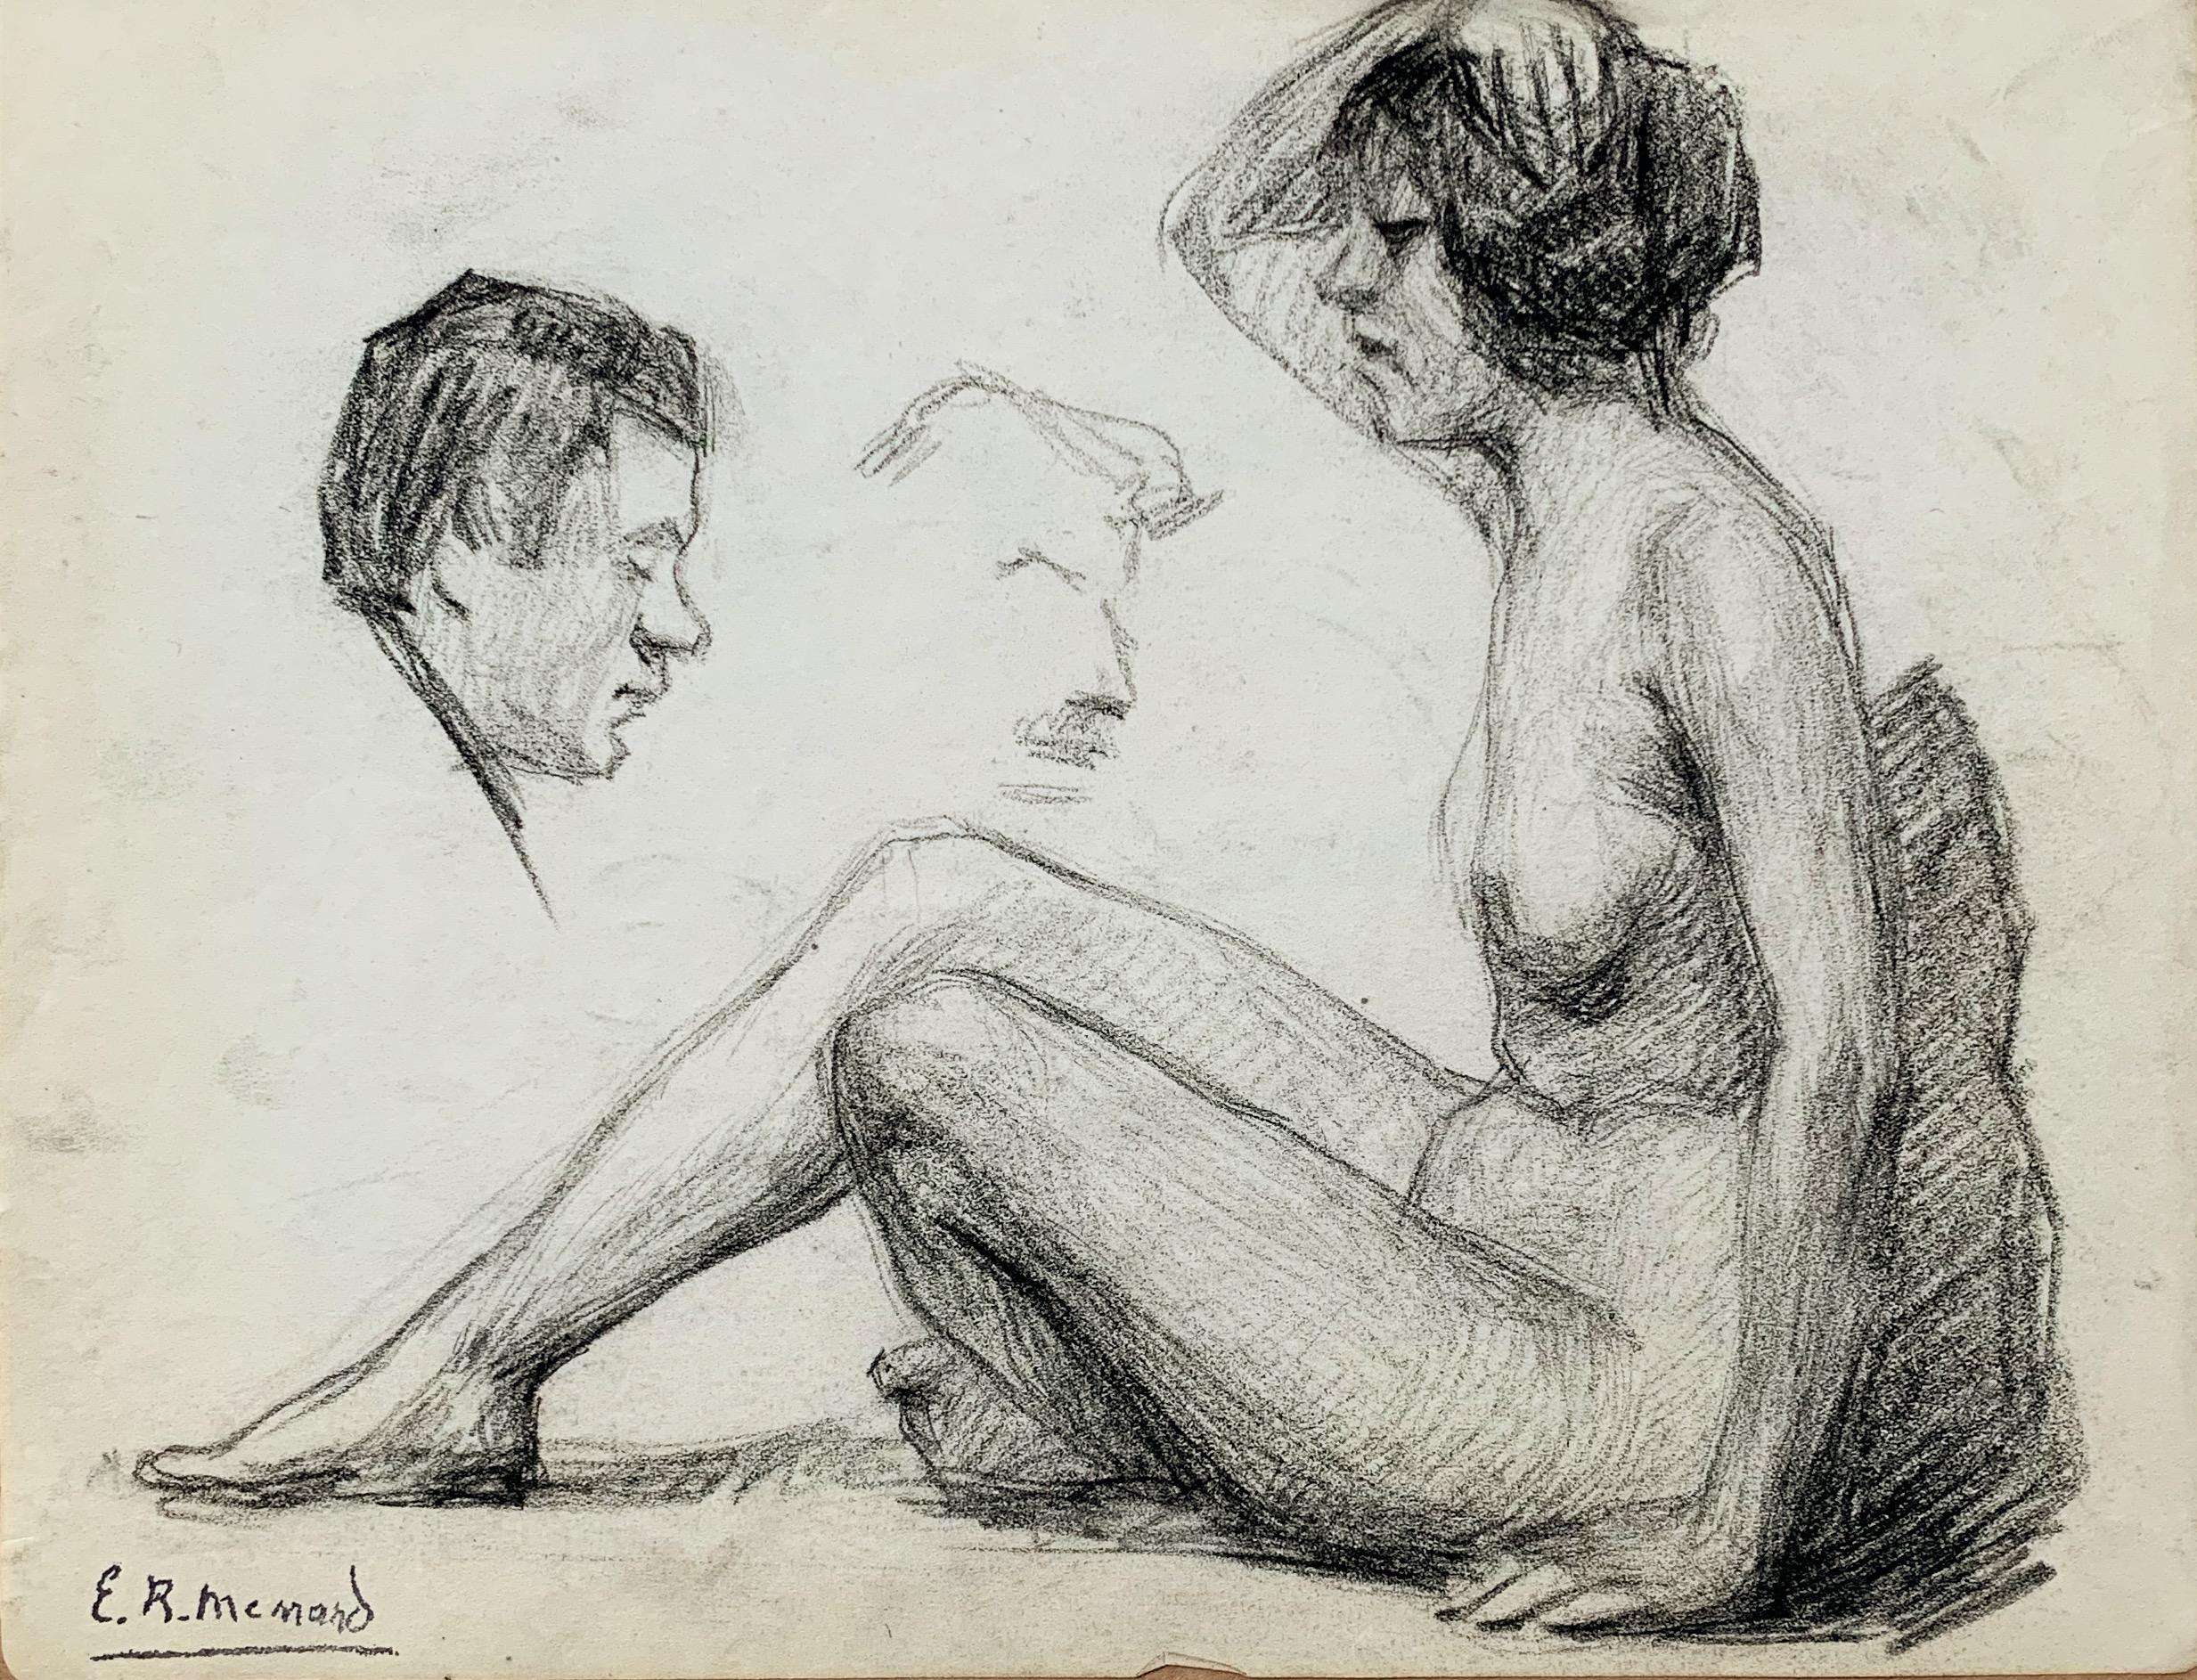 Emile René MENARD (1862-1930) 
Étude d'un nu féminin et d'une tête masculine 
Fusain sur papier
Signé avec le cachet en bas à gauche
21 x 26.5 cm
Bon état, petit pli en bas au centre
Vendu sans cadre